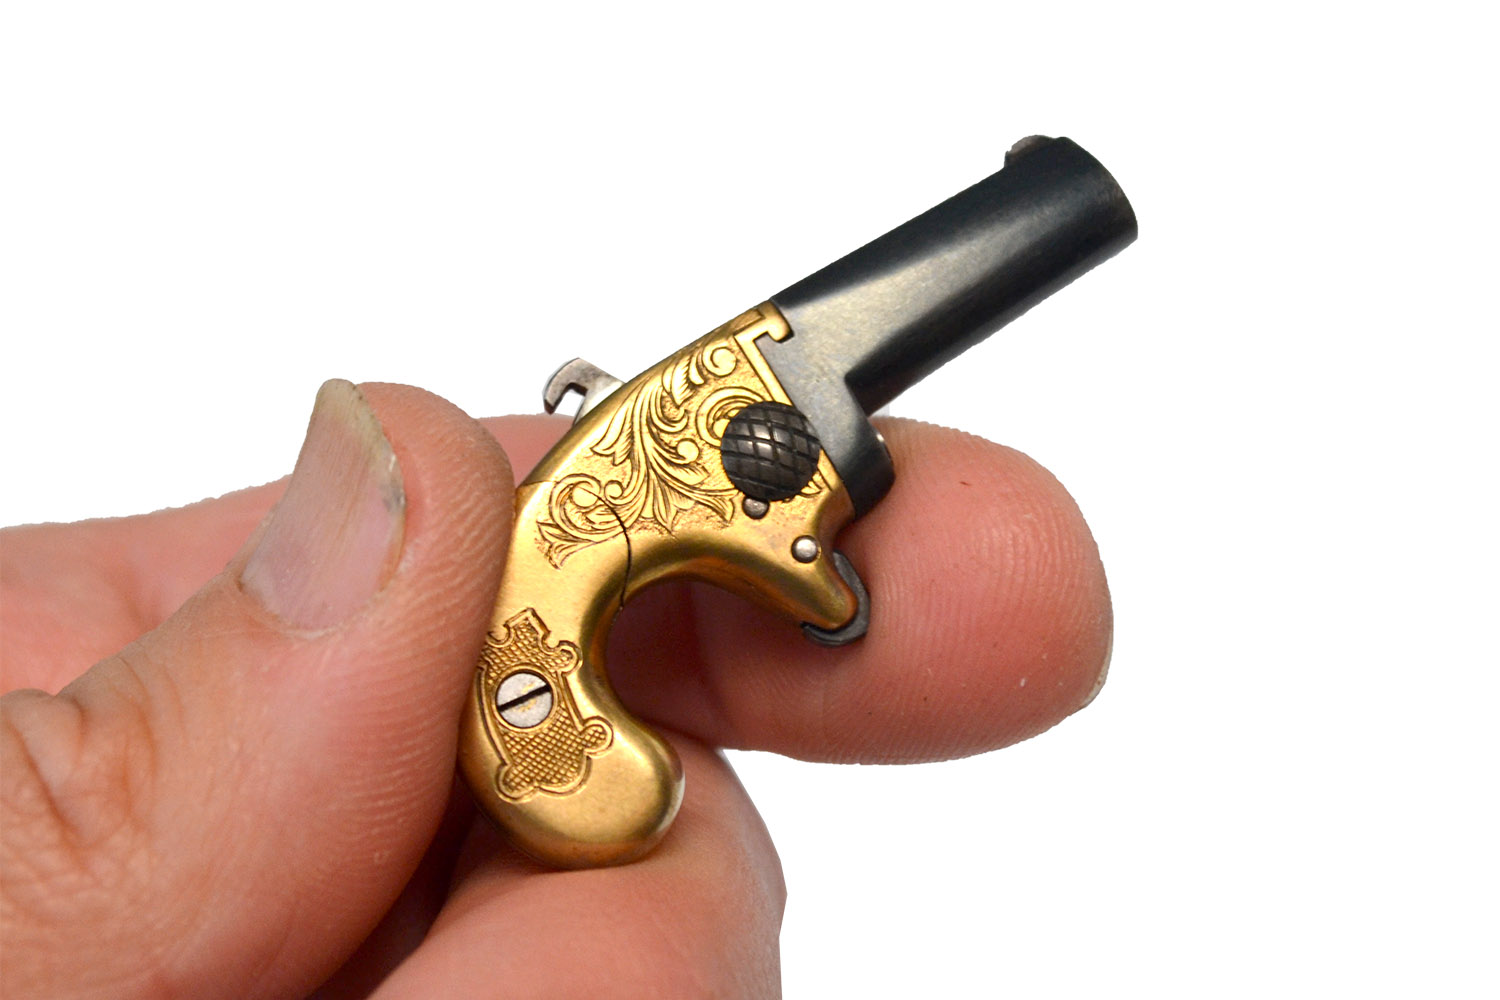 Pin Fire 2mm Southerner Derringer made PocketARS